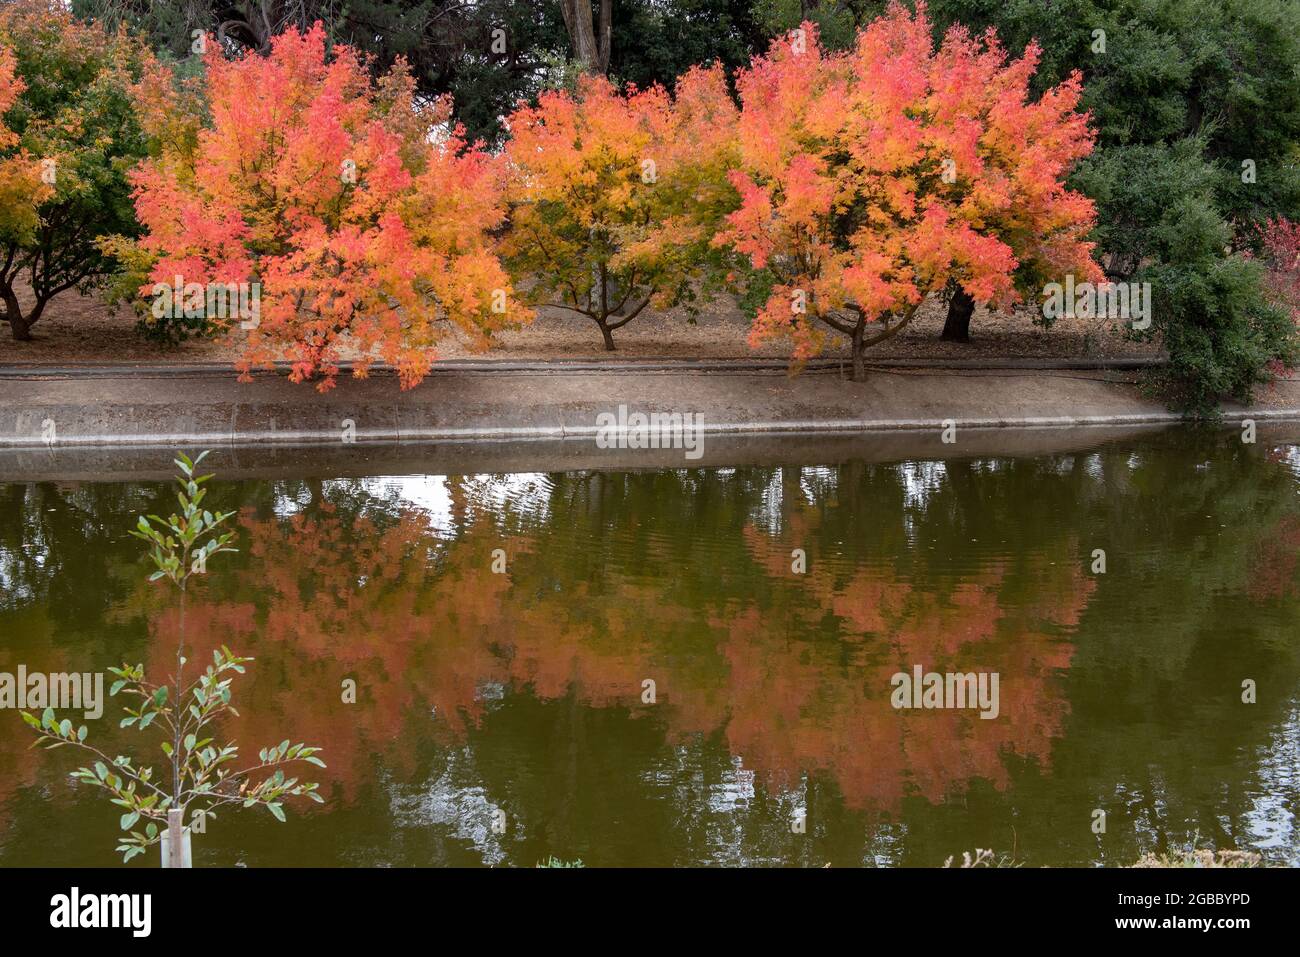 Arbre coloré à l'arboretum de l'UC Davis à l'automne se reflète sur le lac Spafford, avec des teintes d'orange Banque D'Images